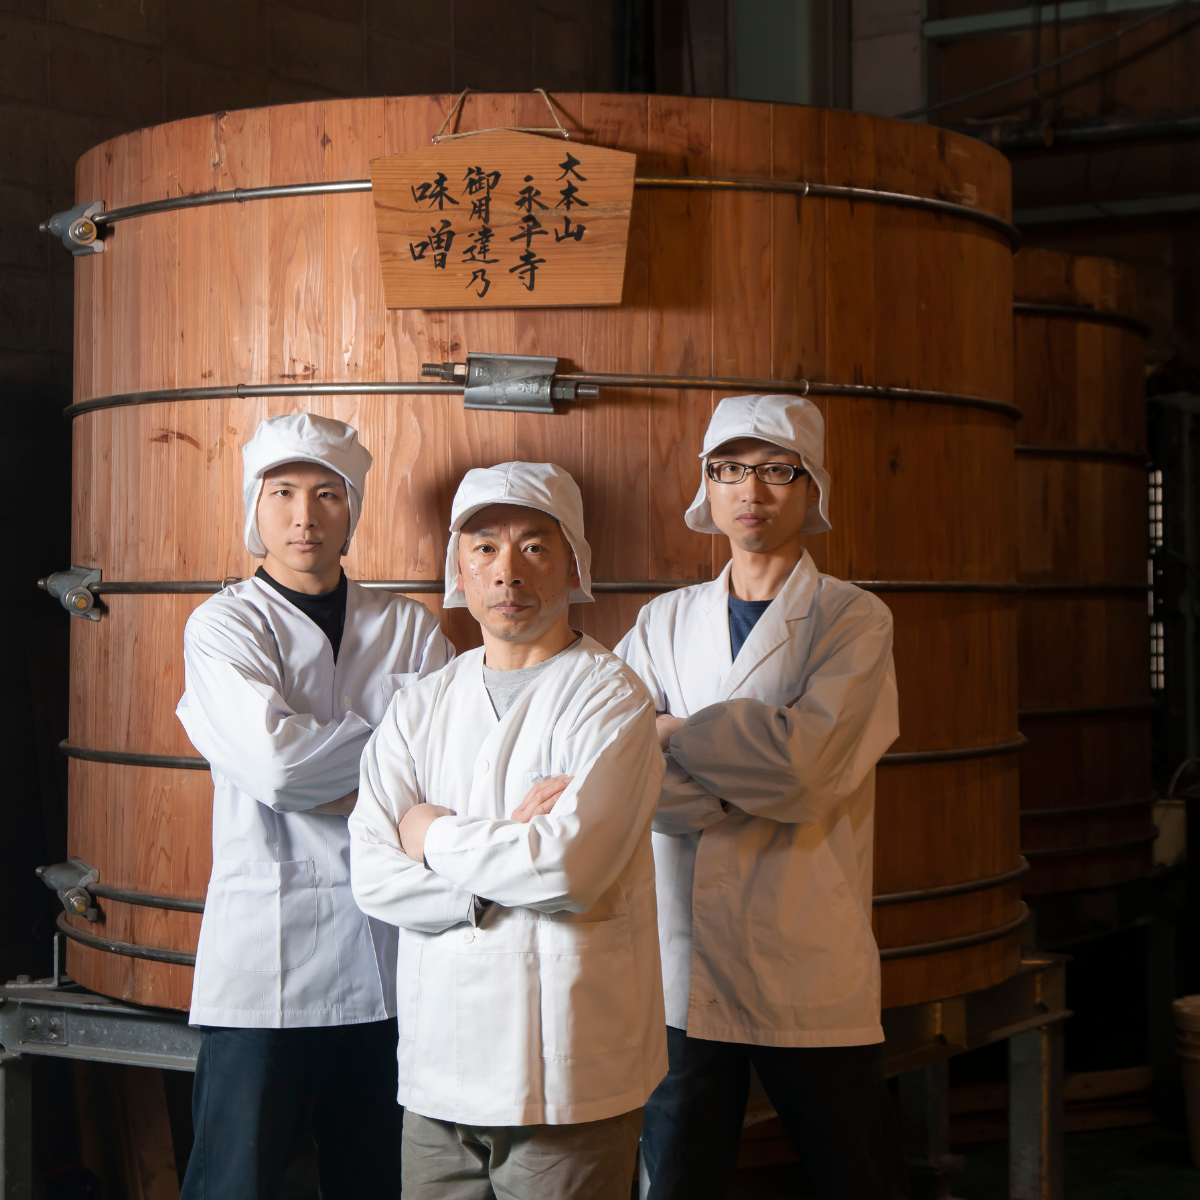 Three craftsmen standing in front of wooden miso barrel